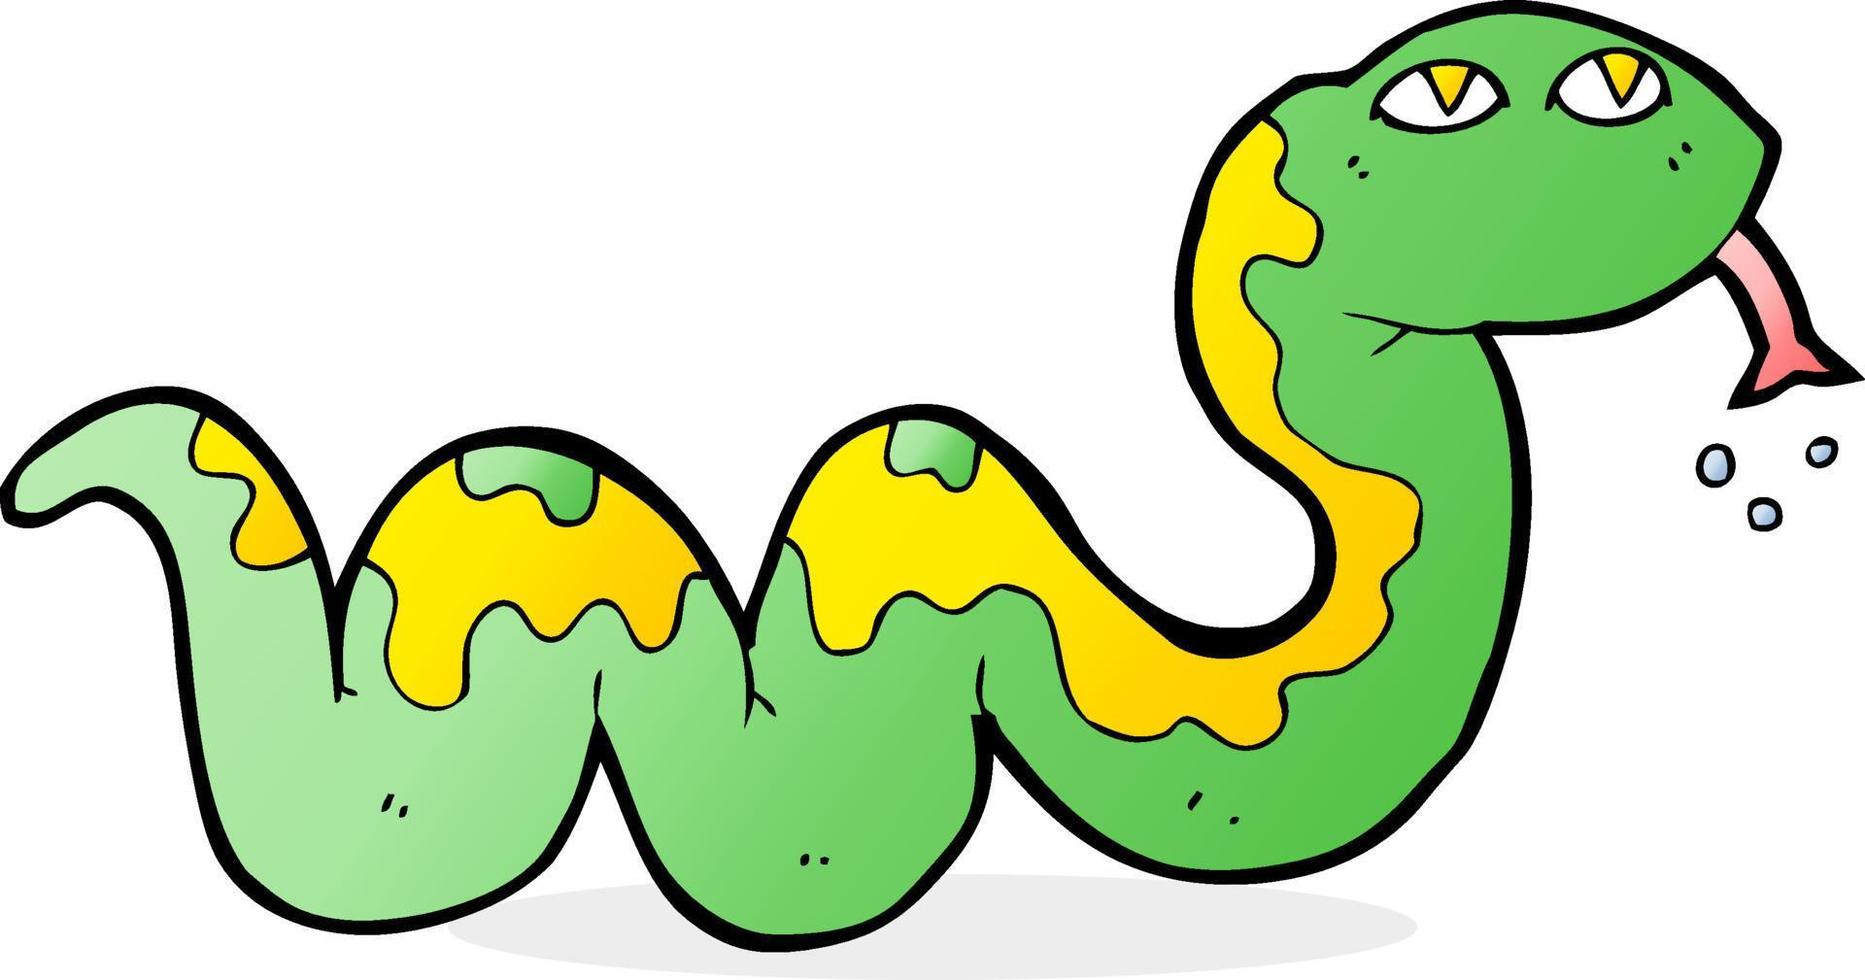 doodle personnage dessin animé serpent vecteur